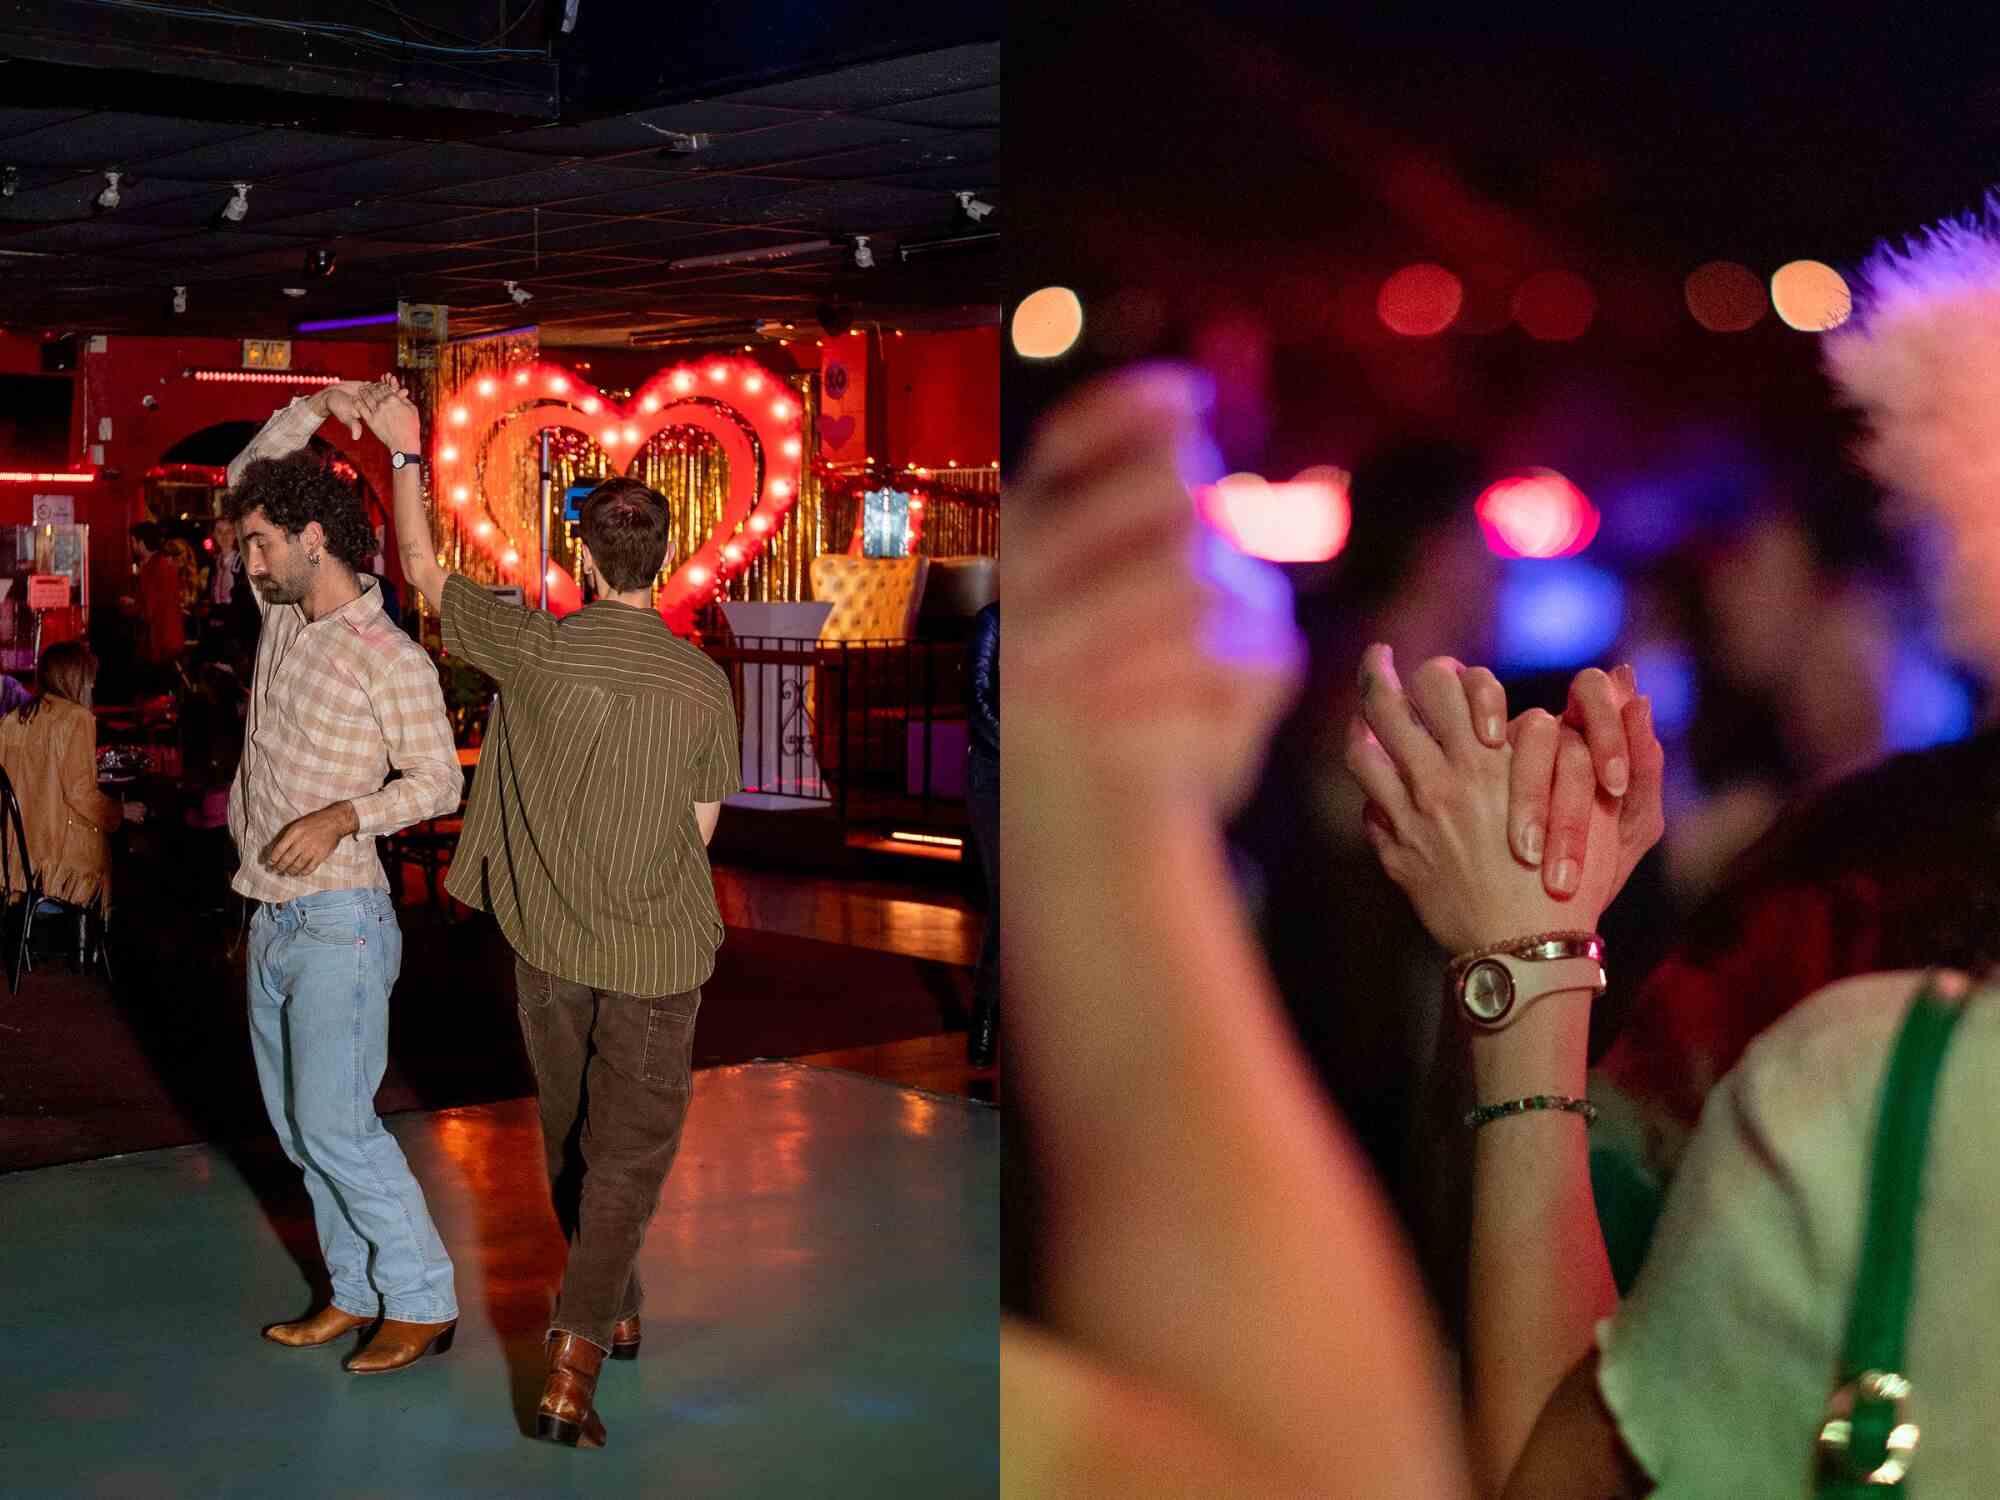 Zwei Fotos nebeneinander, eines zeigt zwei tanzende Menschen und das andere eine Nahaufnahme von zwei Menschen, die sich an den Händen halten.